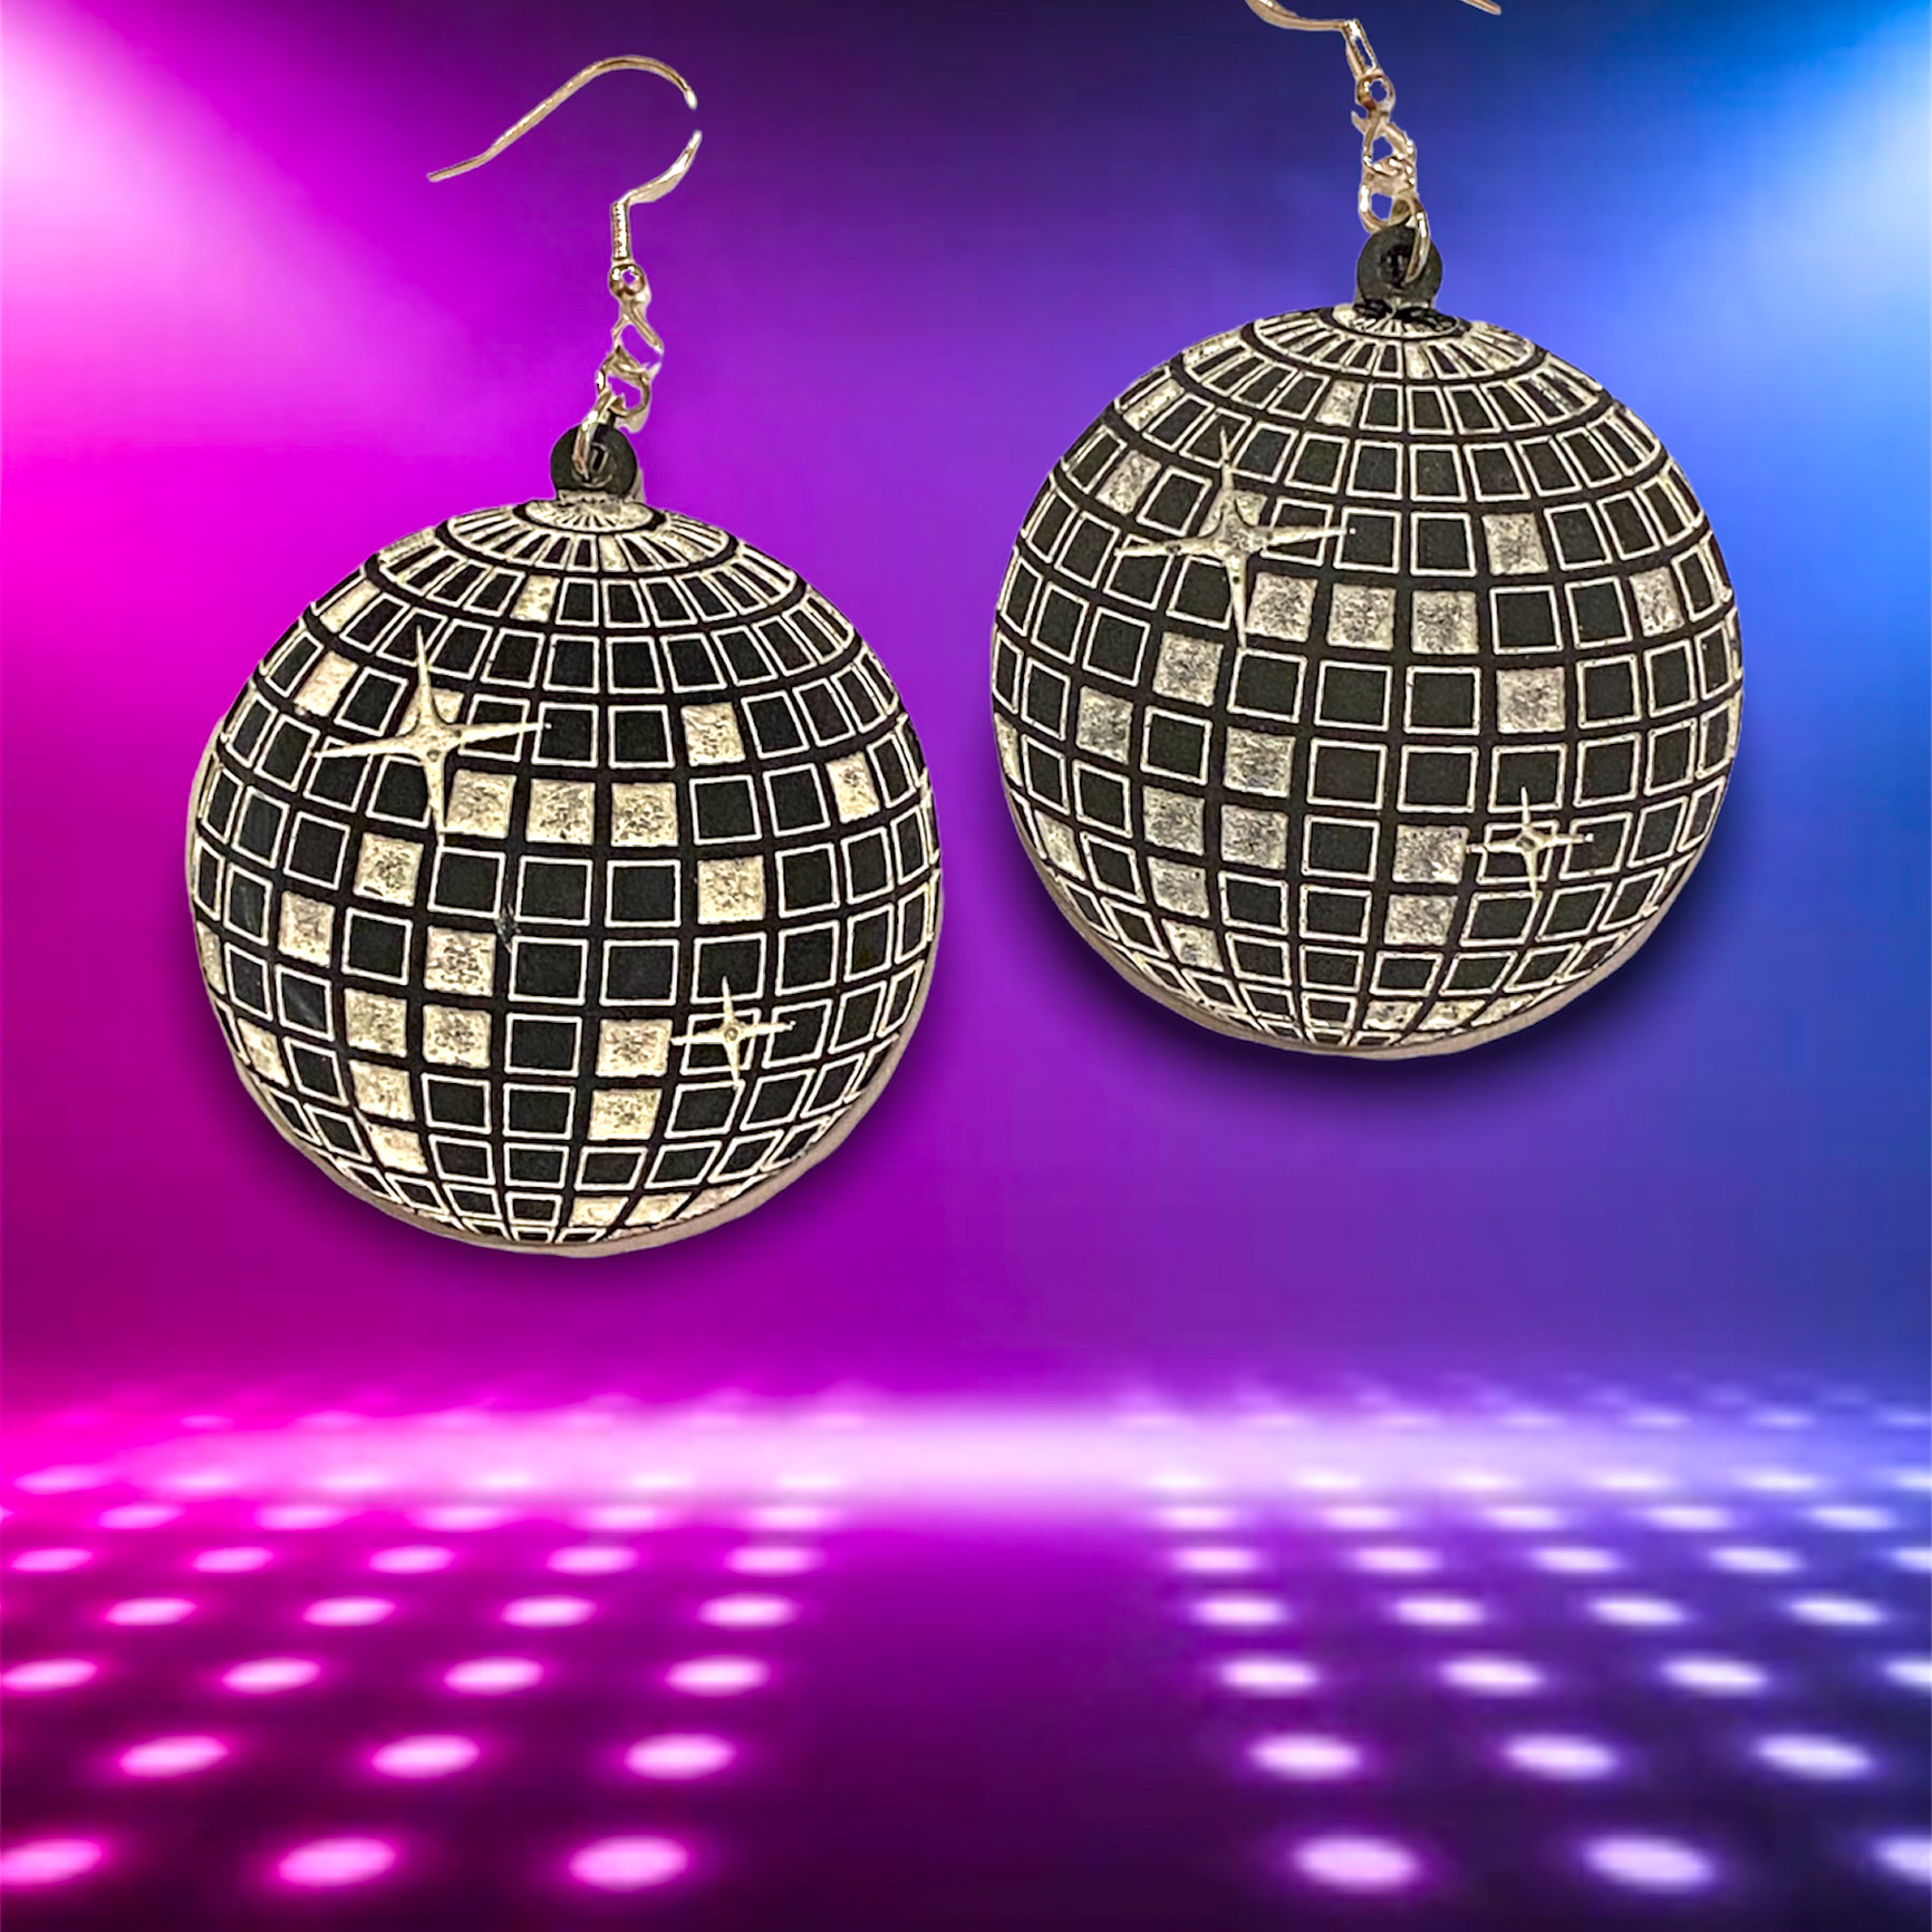 Premium Photo  Mini disco balls